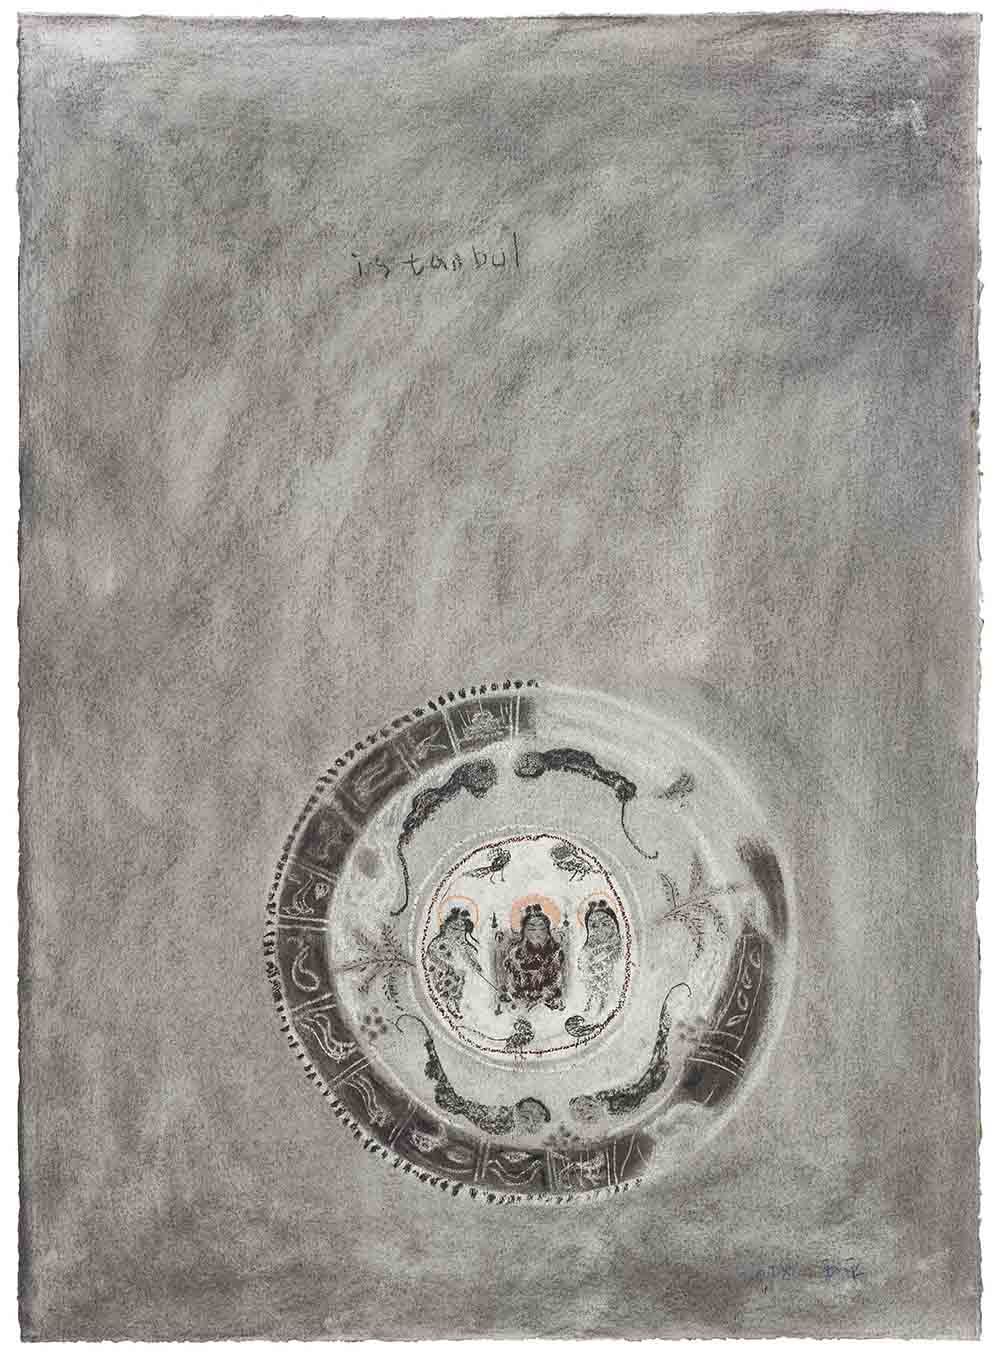 Wang Yu Ping, Tavola, 2018, carboncino su carta, cm 76x56